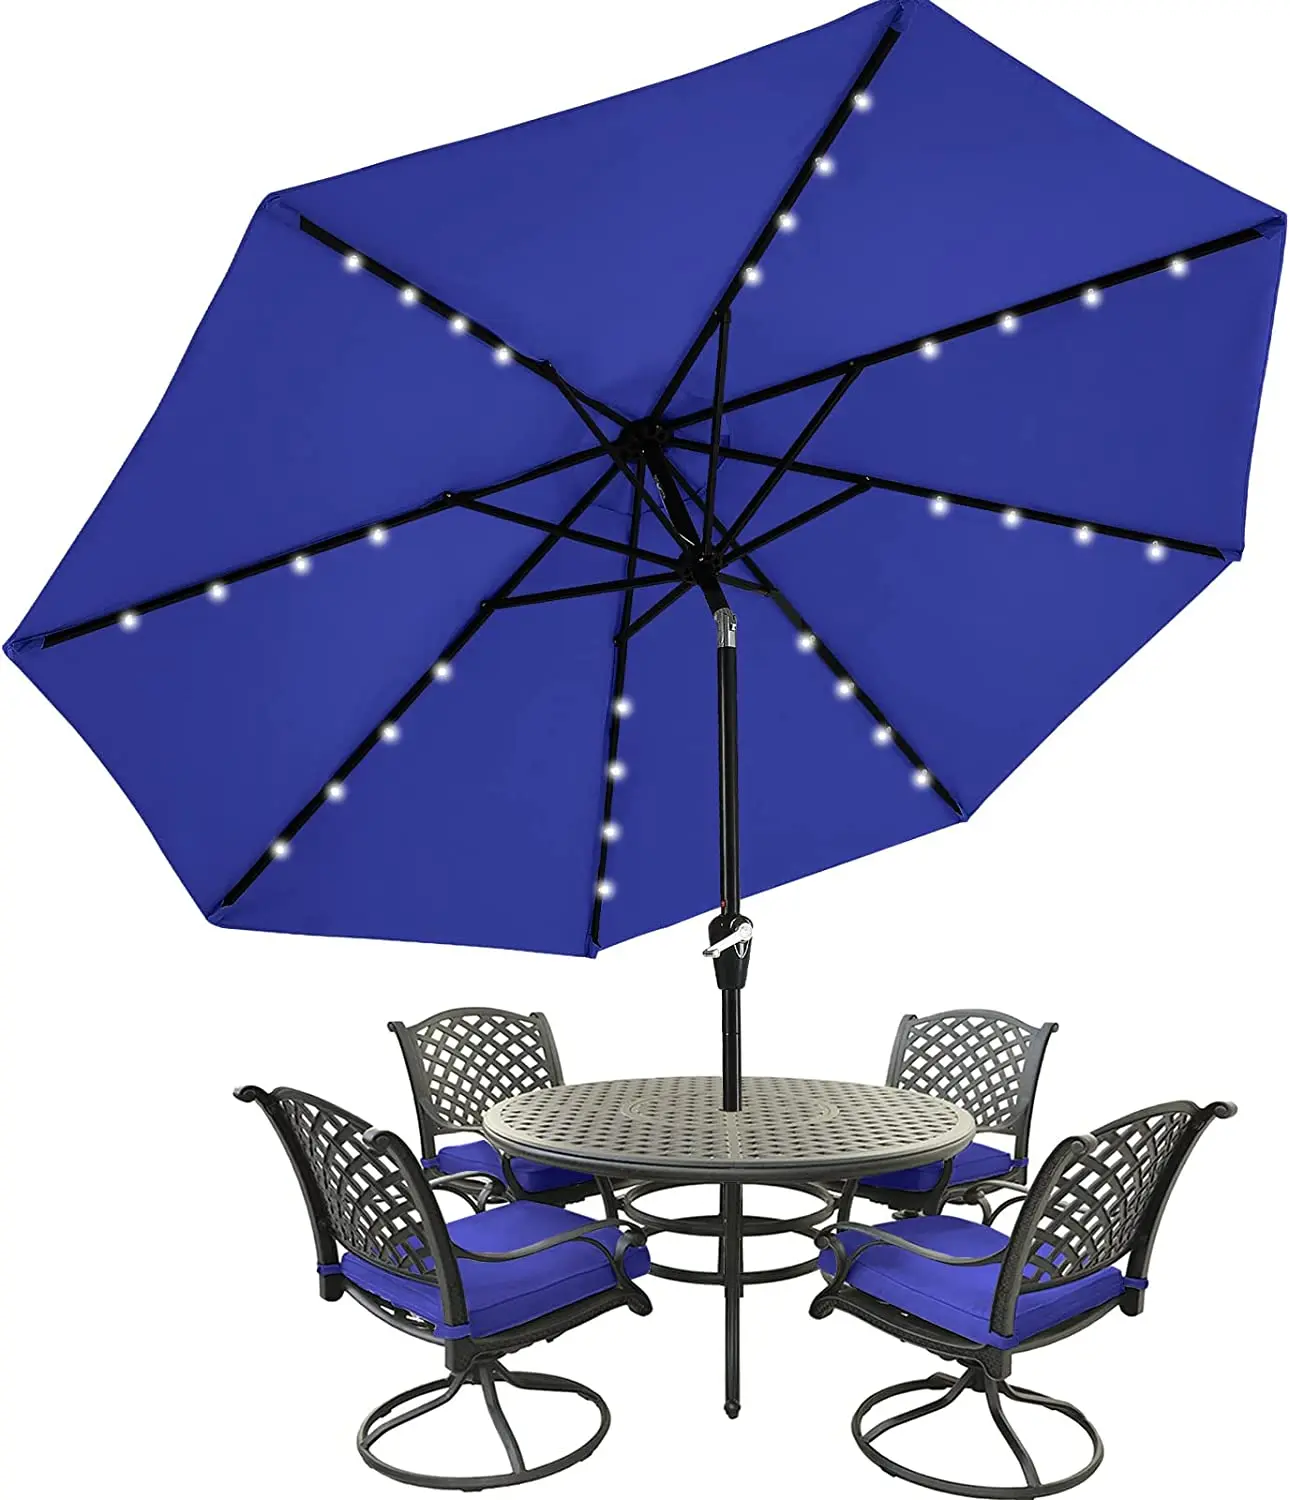 

Зонт POPTOP для внутреннего дворика с 32 солнечными фотолампами-8 ребрами (9 футов, бирюзовый)